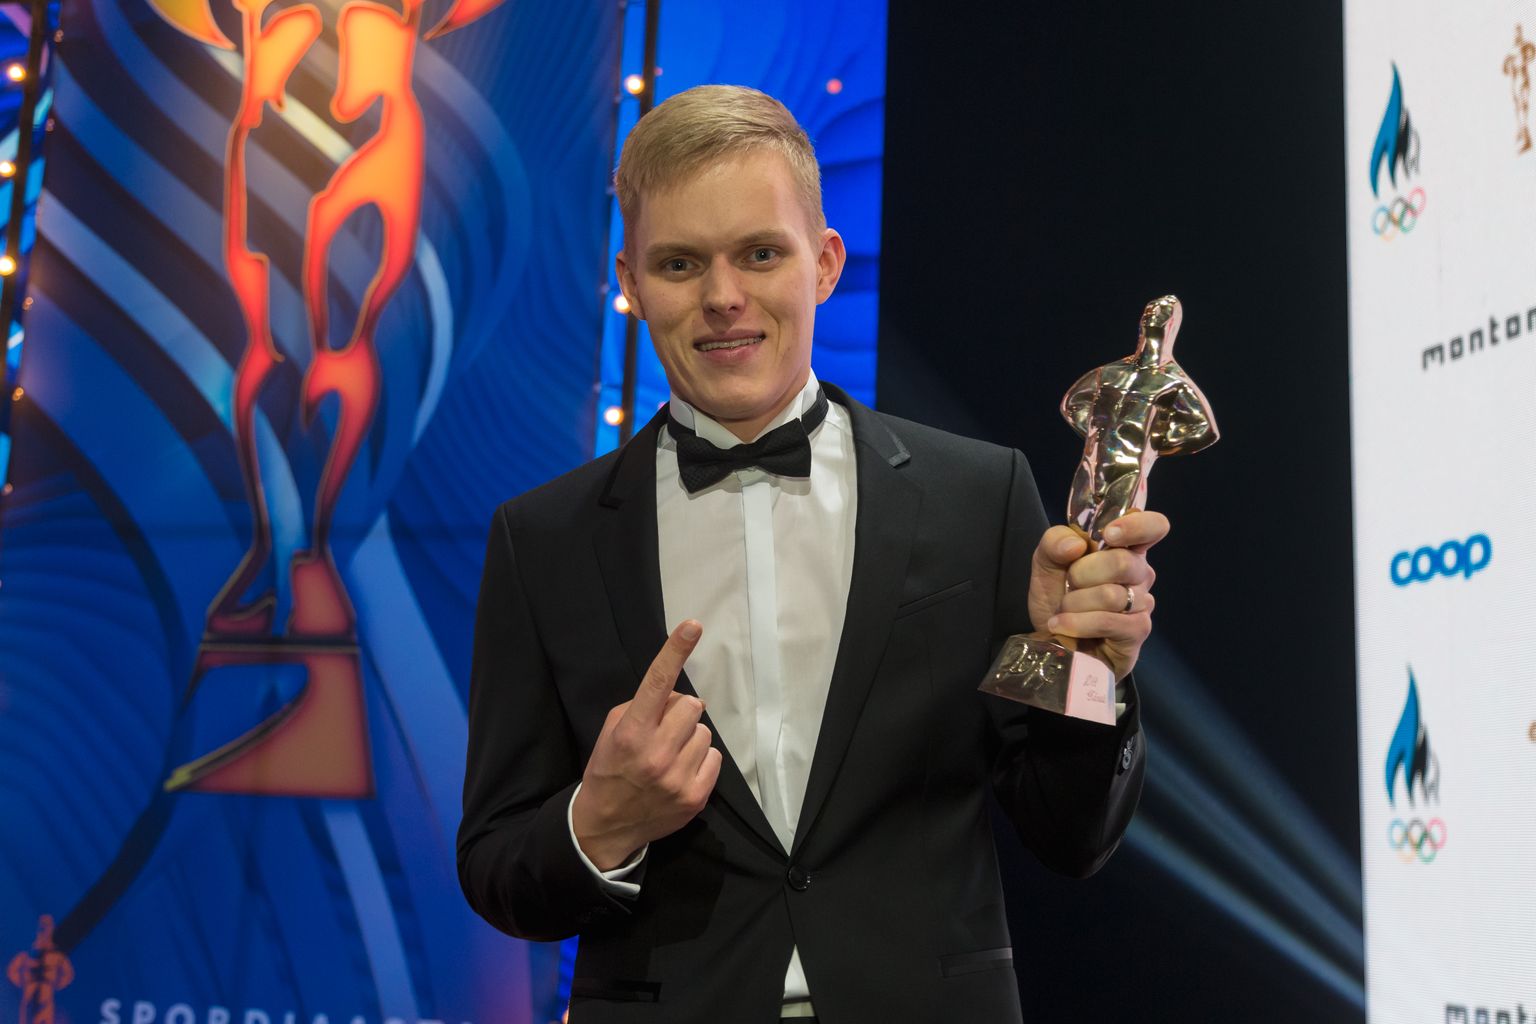 Rallisõitja Ott Tänak valiti aasta sportlaseks. Kaardilugeja Martin Järveojaga sai ta võistkondade arvestuses teise koha.